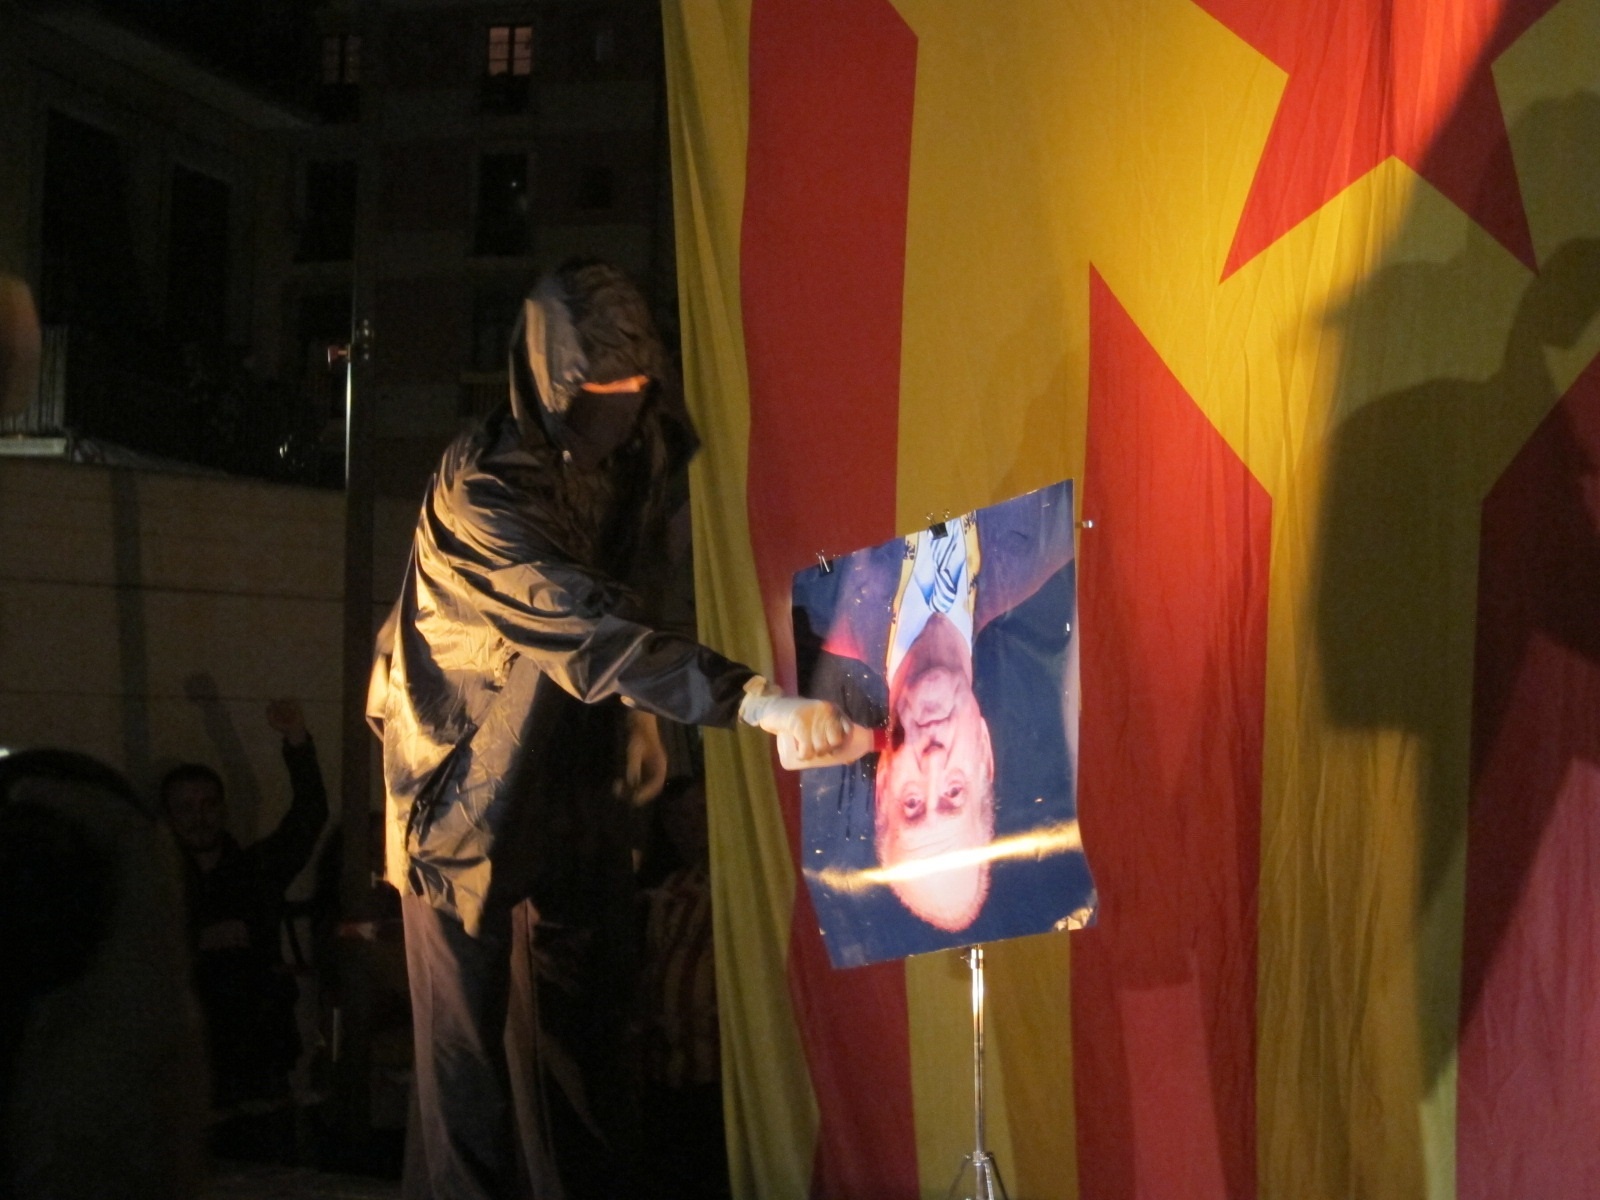 Queman un retrato del Rey y una bandera española tras la manifestación anticapitalista